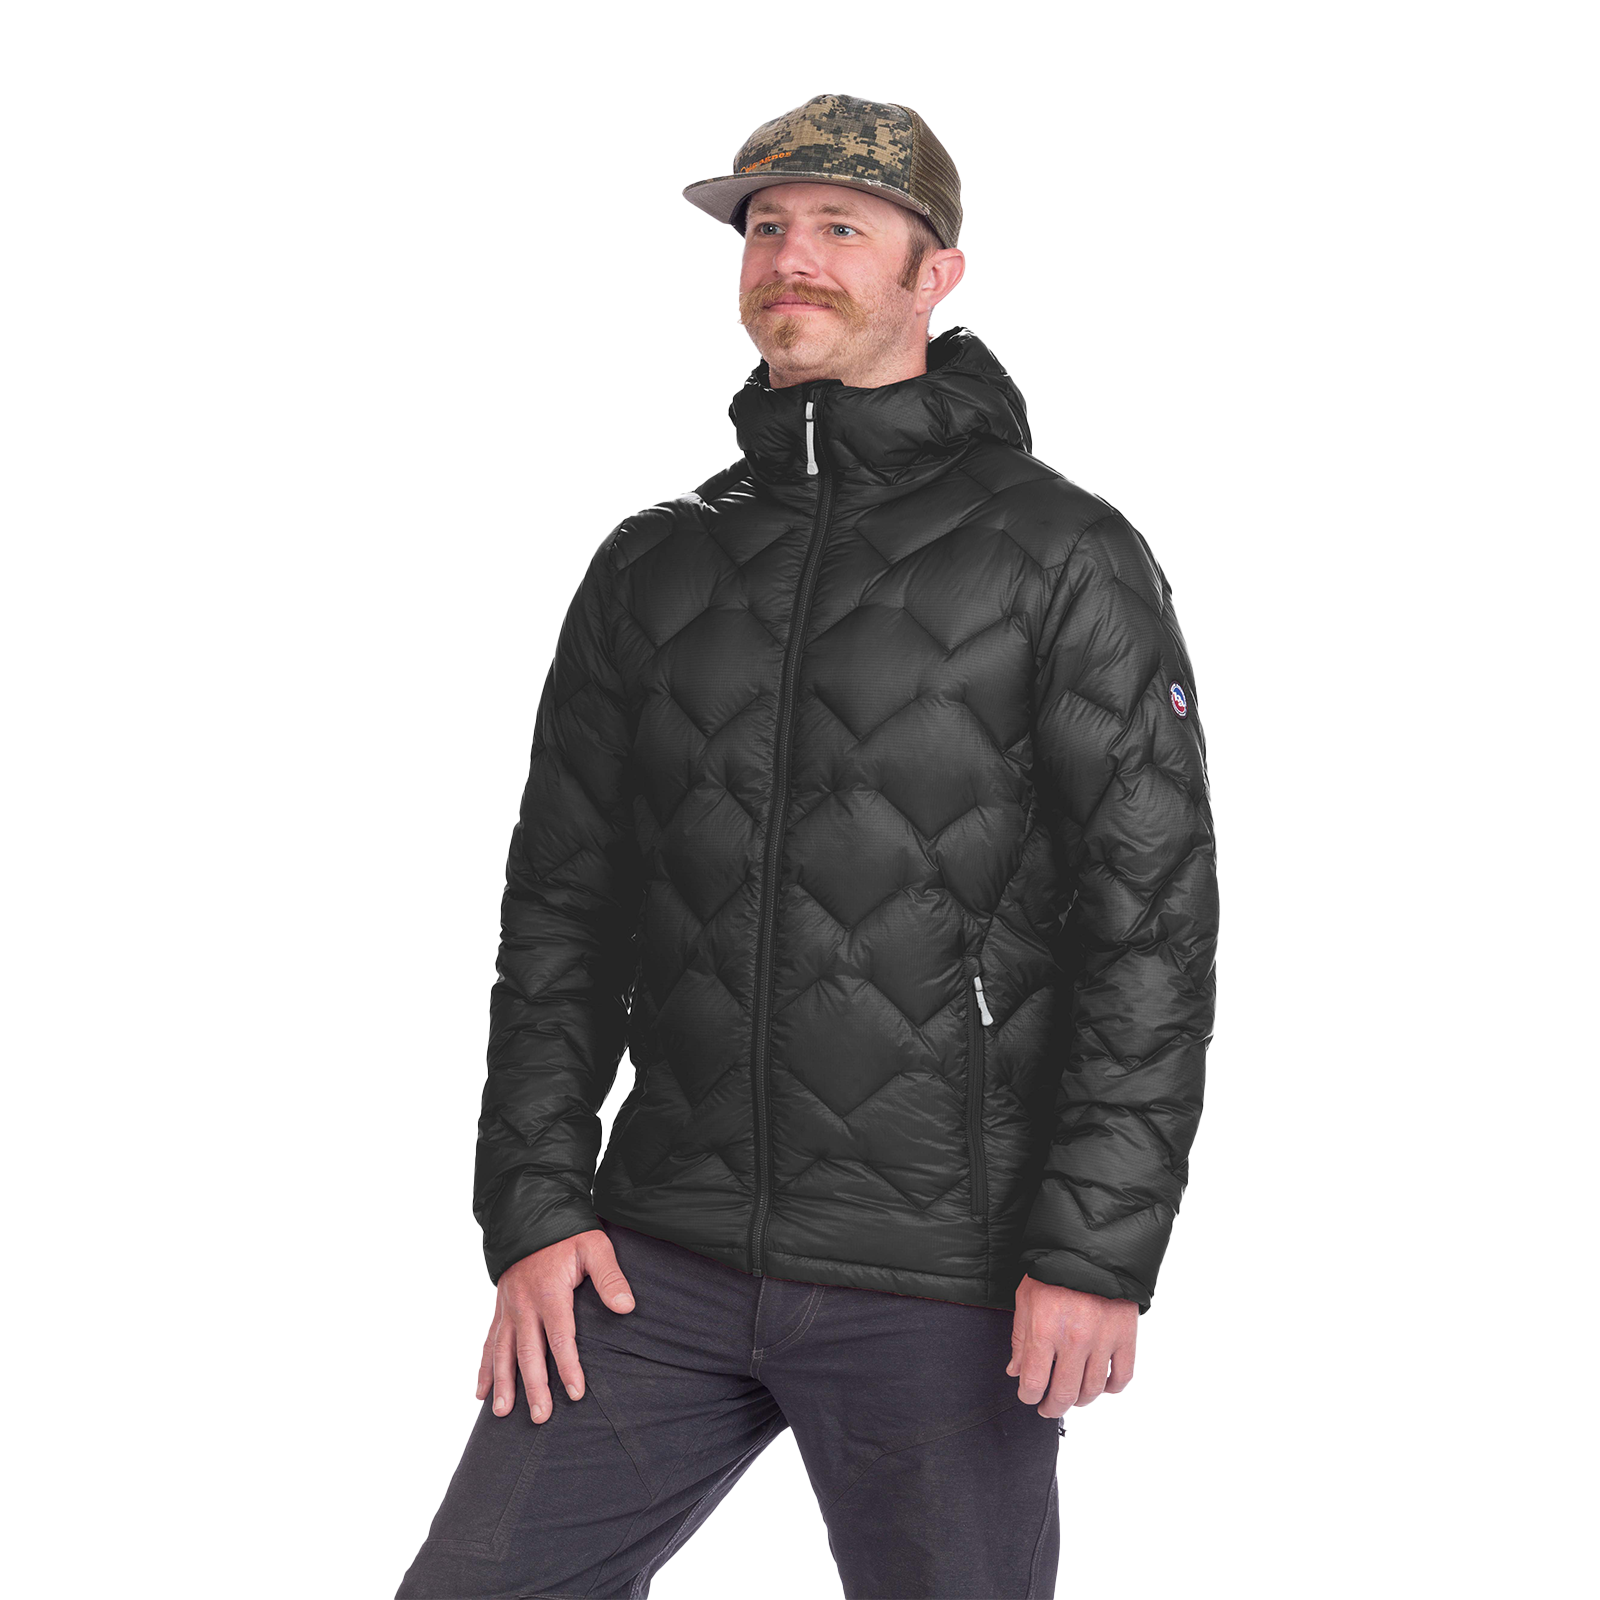 Super Extra Warm shoulder pad jacket